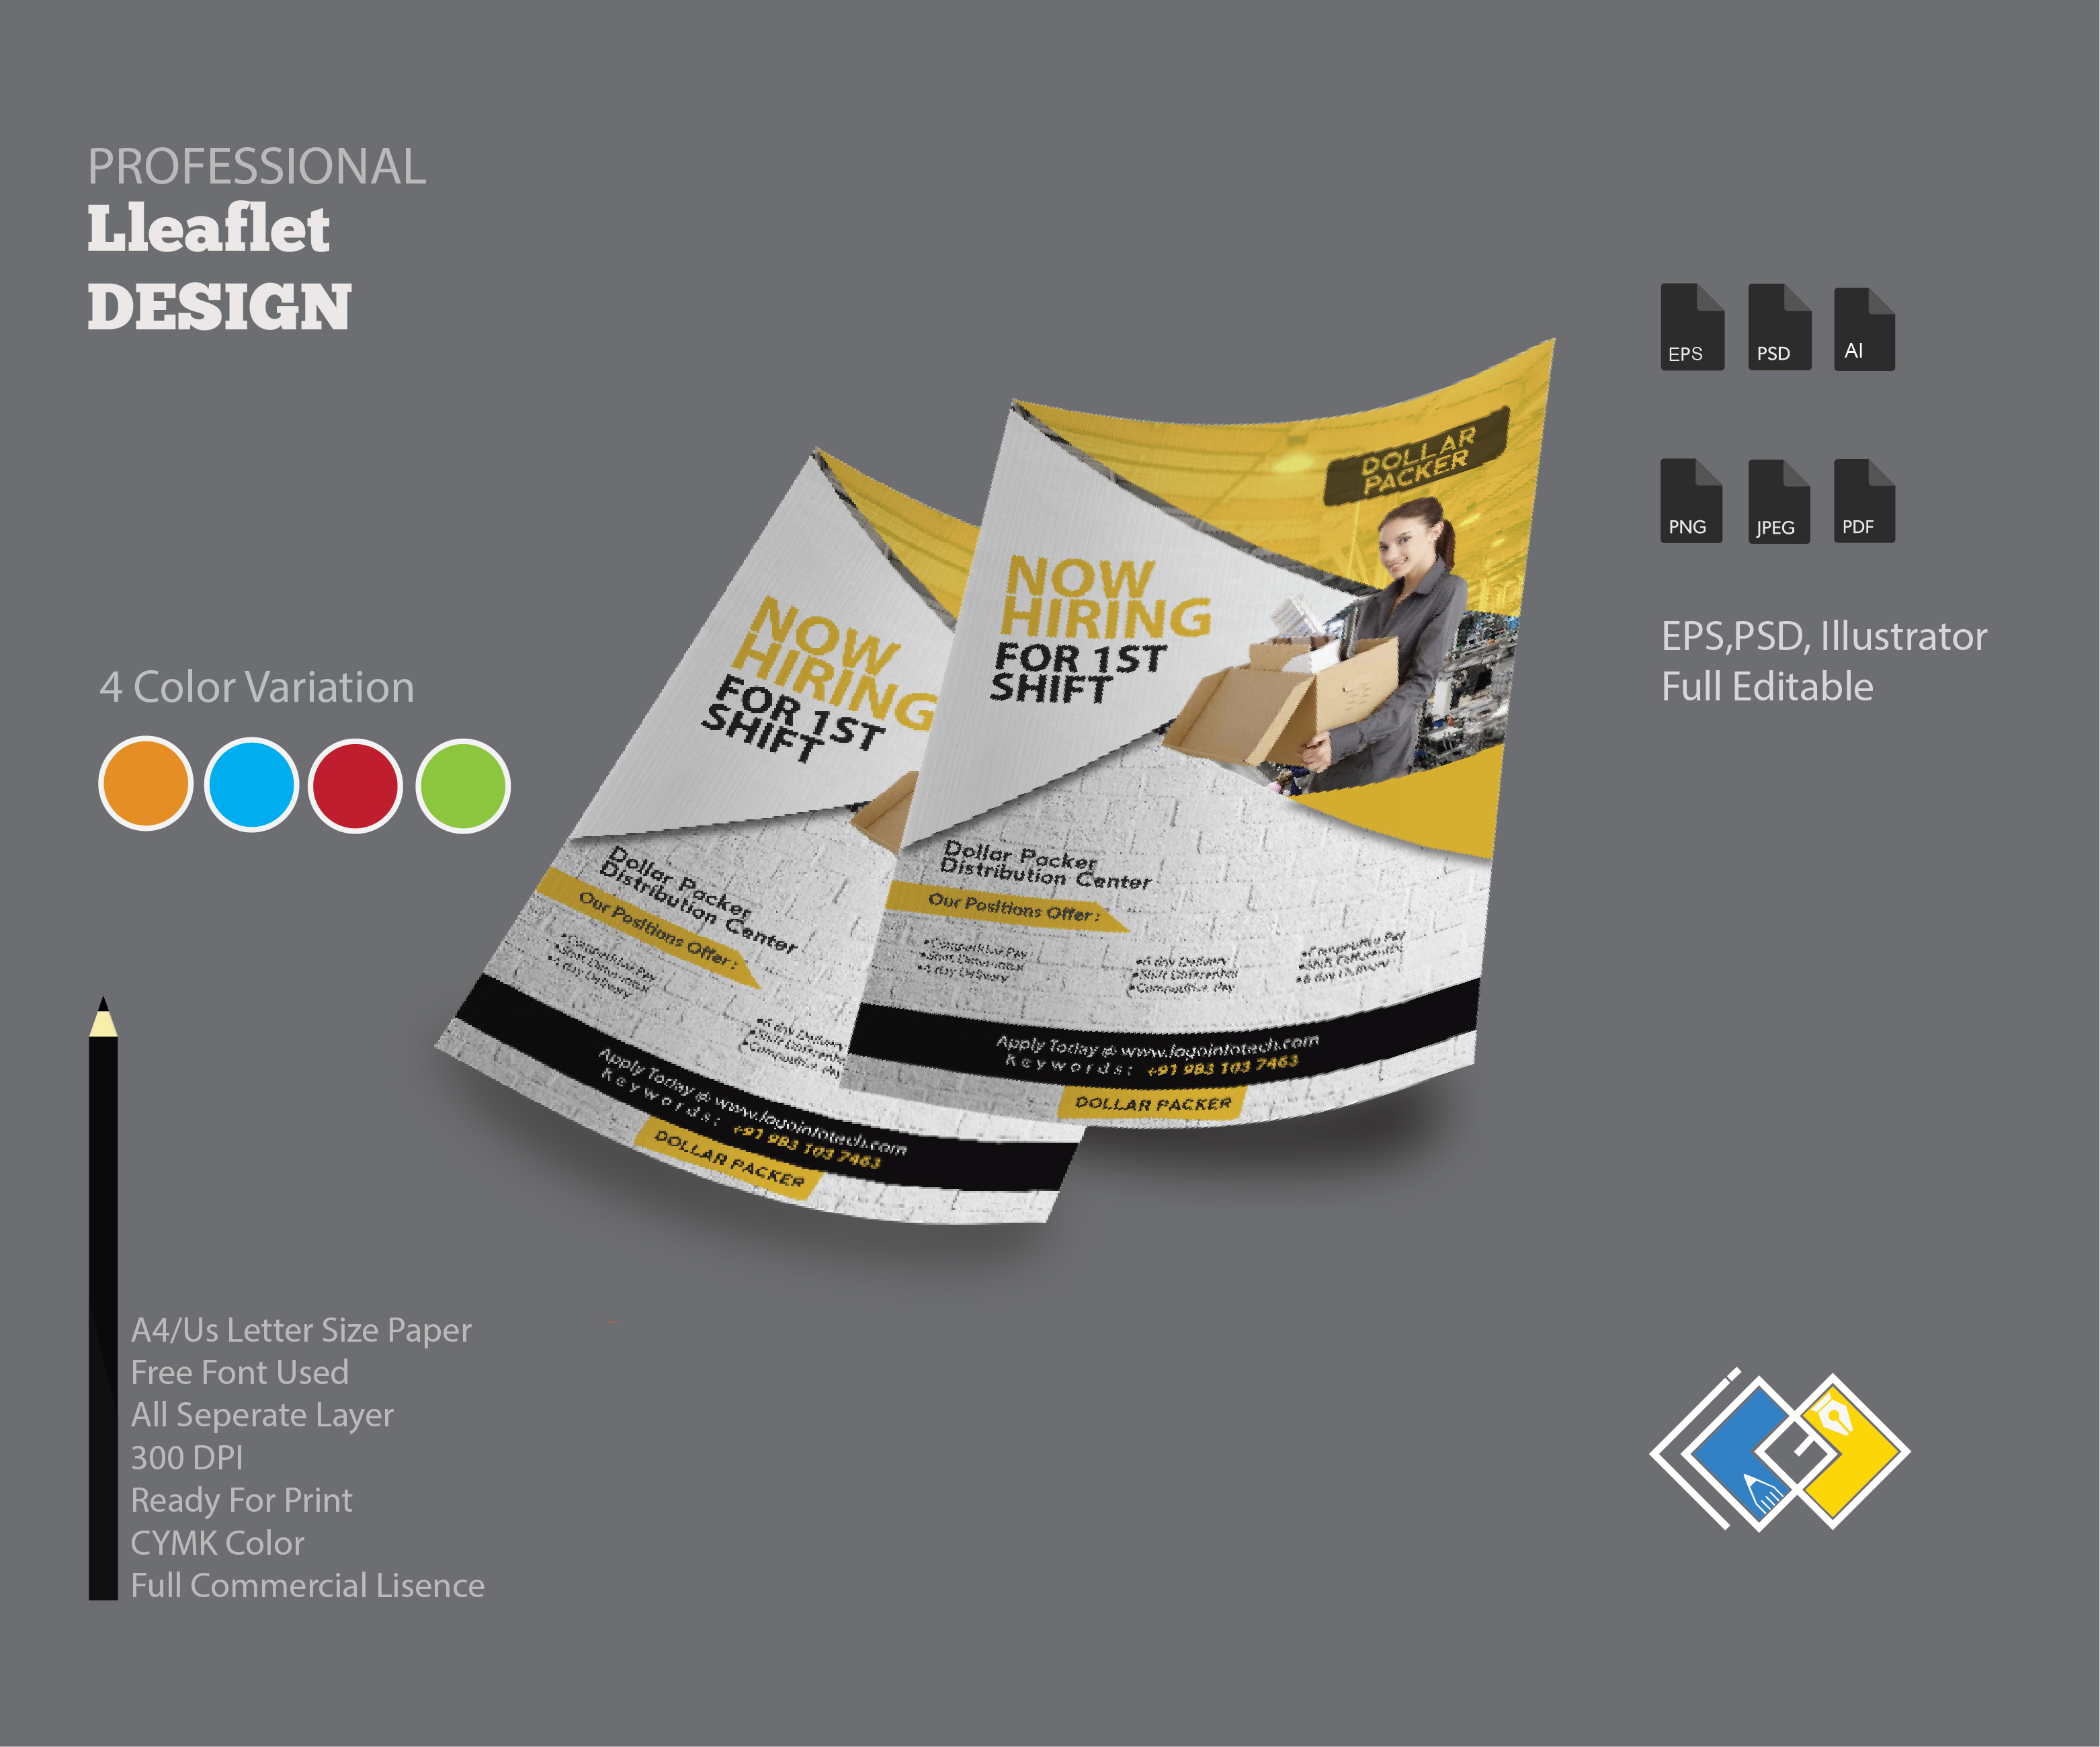 Leaflet Design Service, Professional Leaflet Design Company